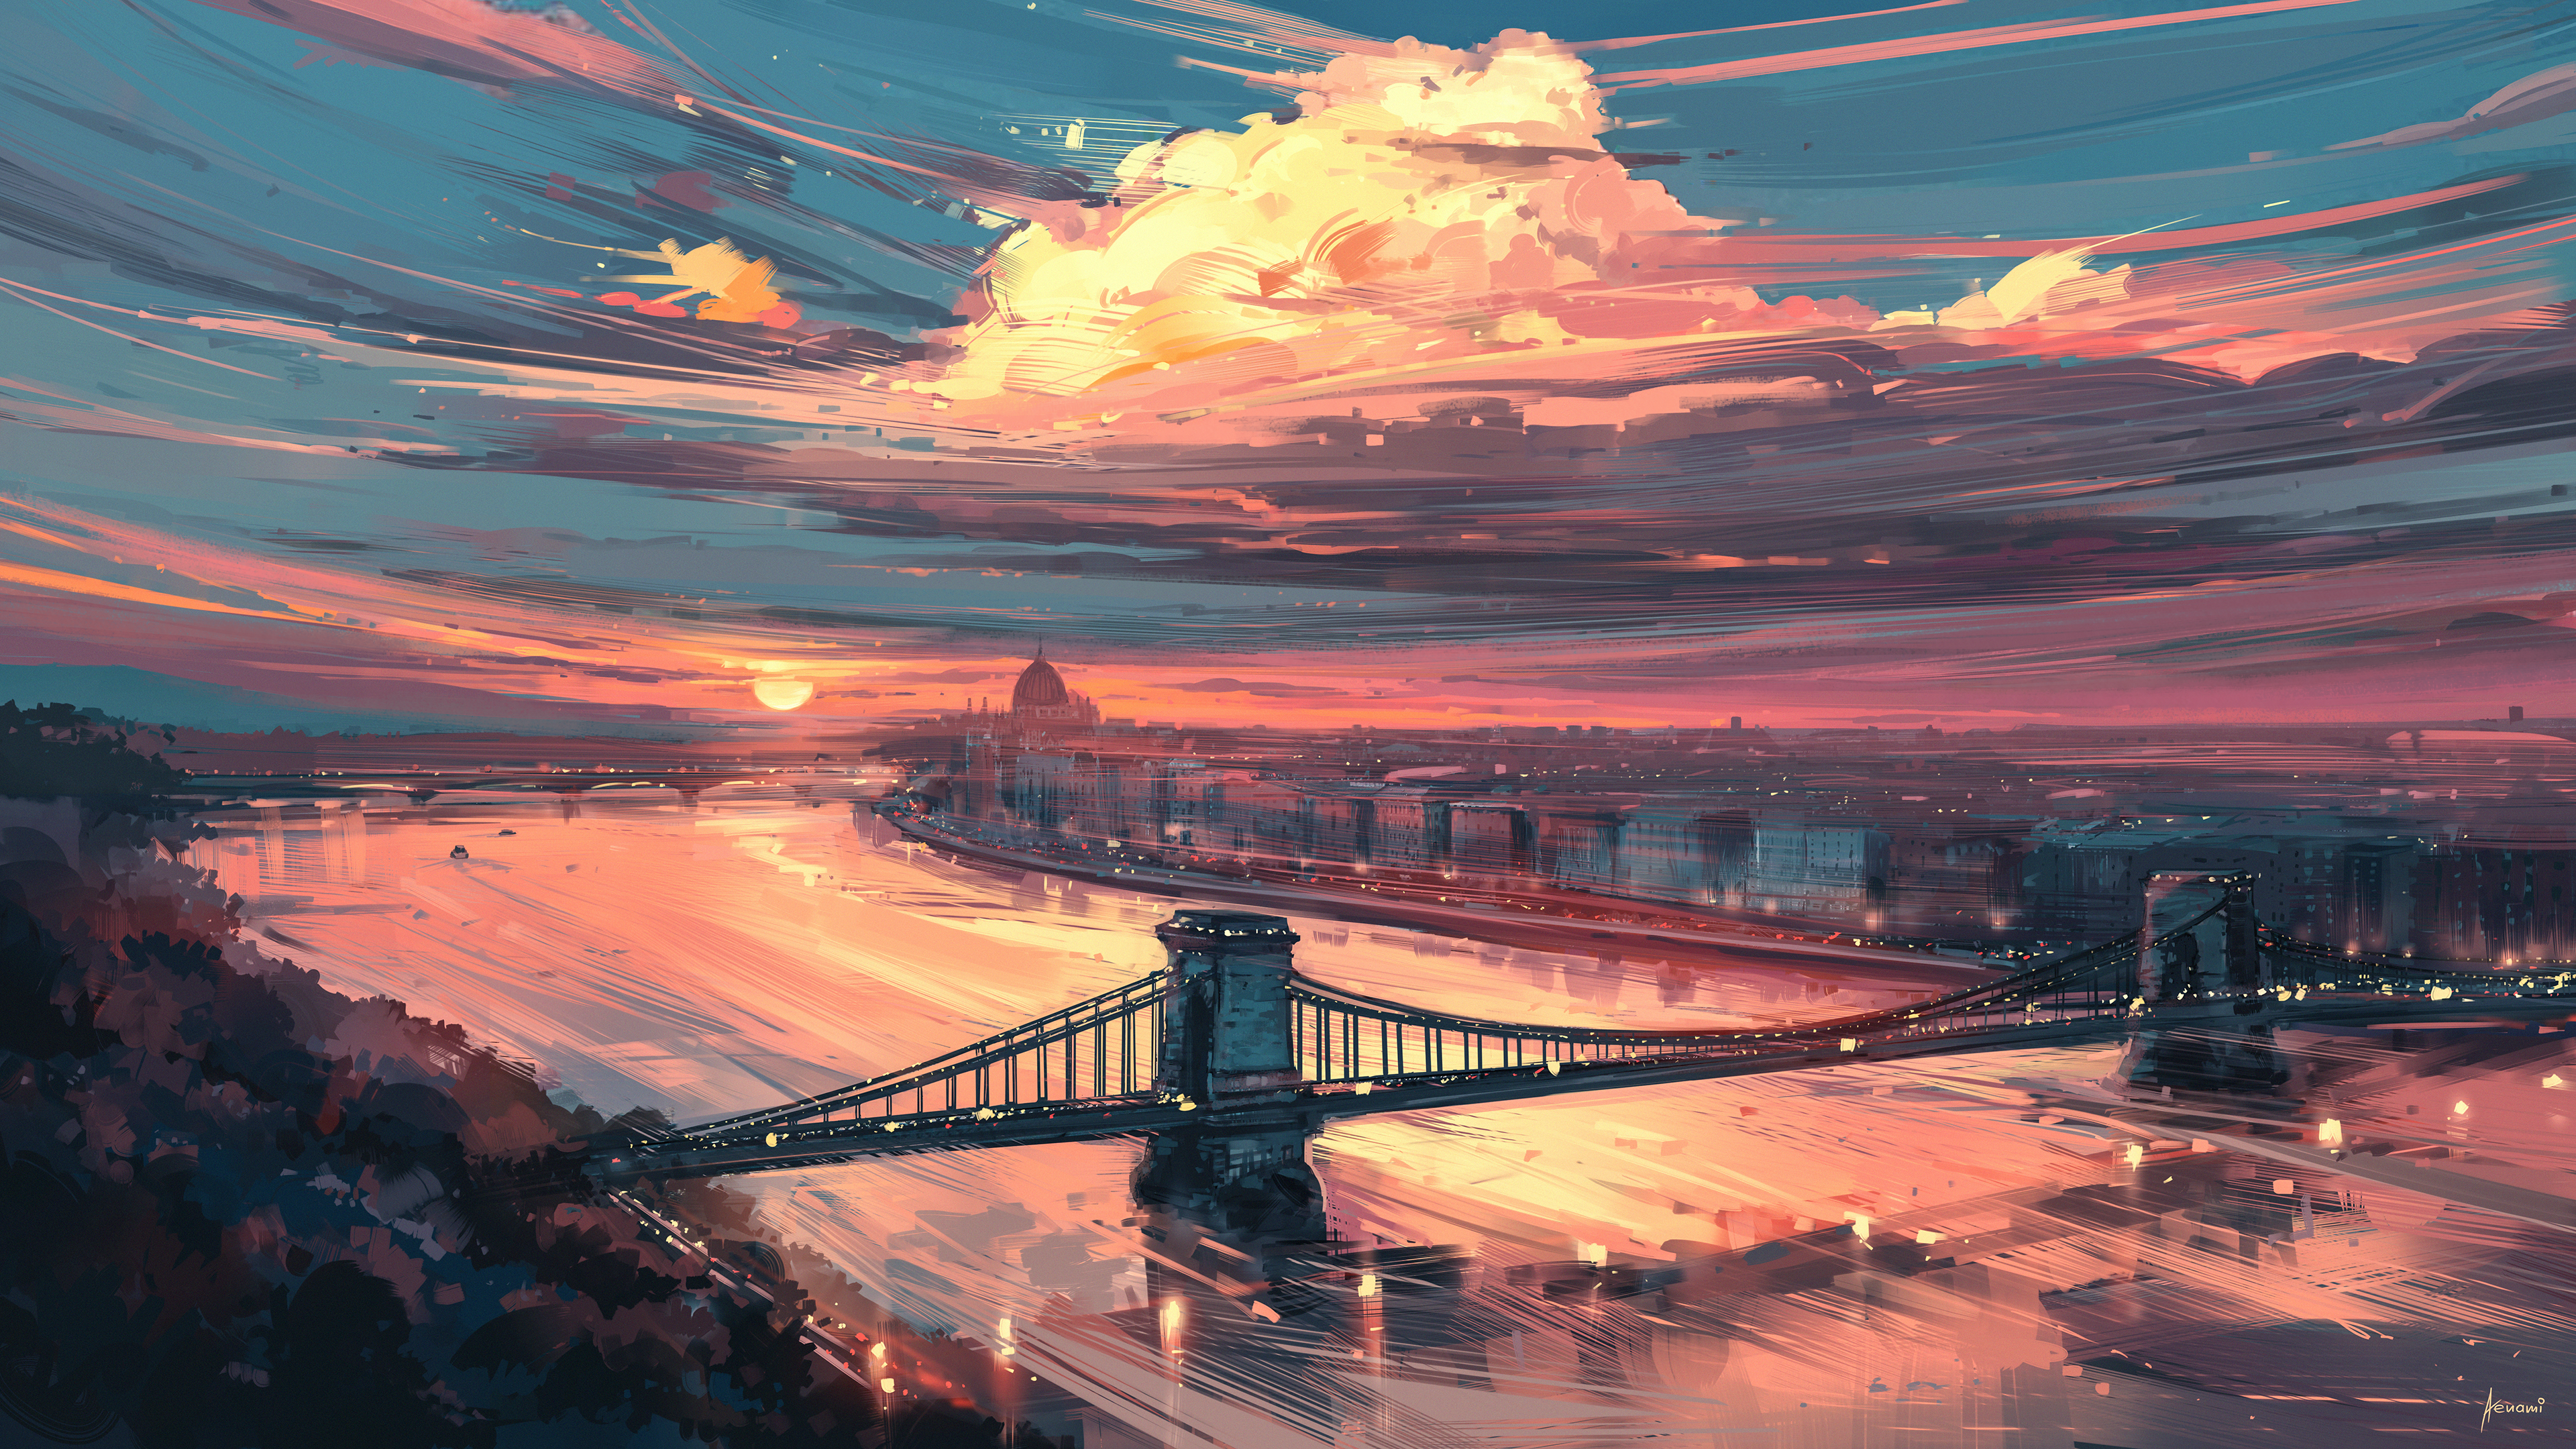 Aenami Digital Art Artwork Illustration Cityscape City Sunset River Clouds Bridge Architecture Build 3840x2160